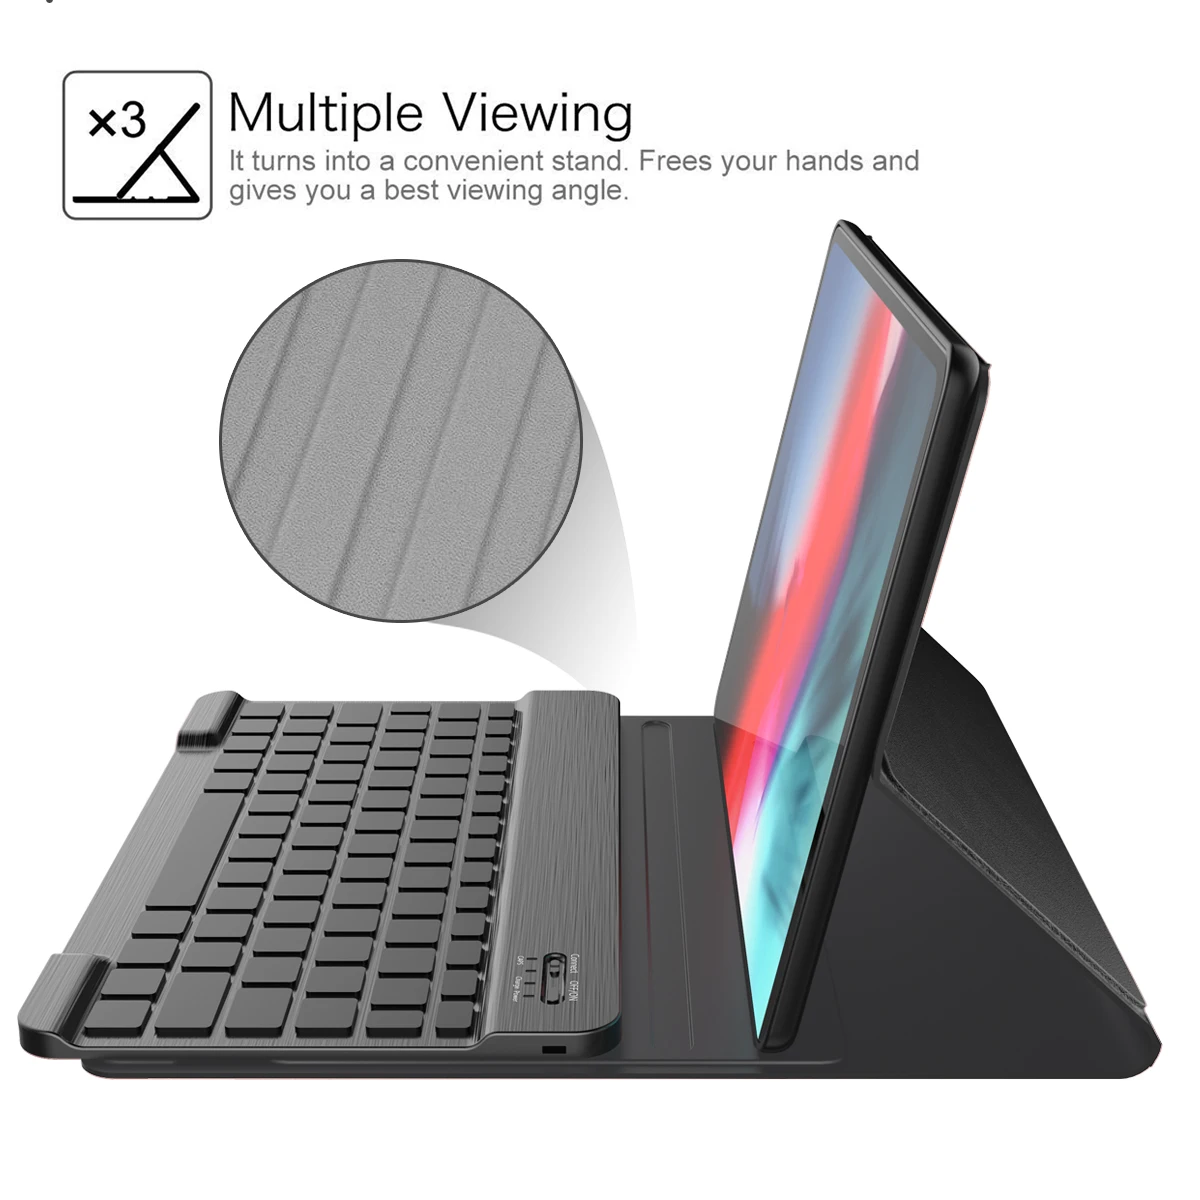 Для iPad Pro 11 дюймов 2018 клавиатурой чехол для планшета из искусственной кожи 7 цветов Подсветка США Беспроводной клавиатура чехол для